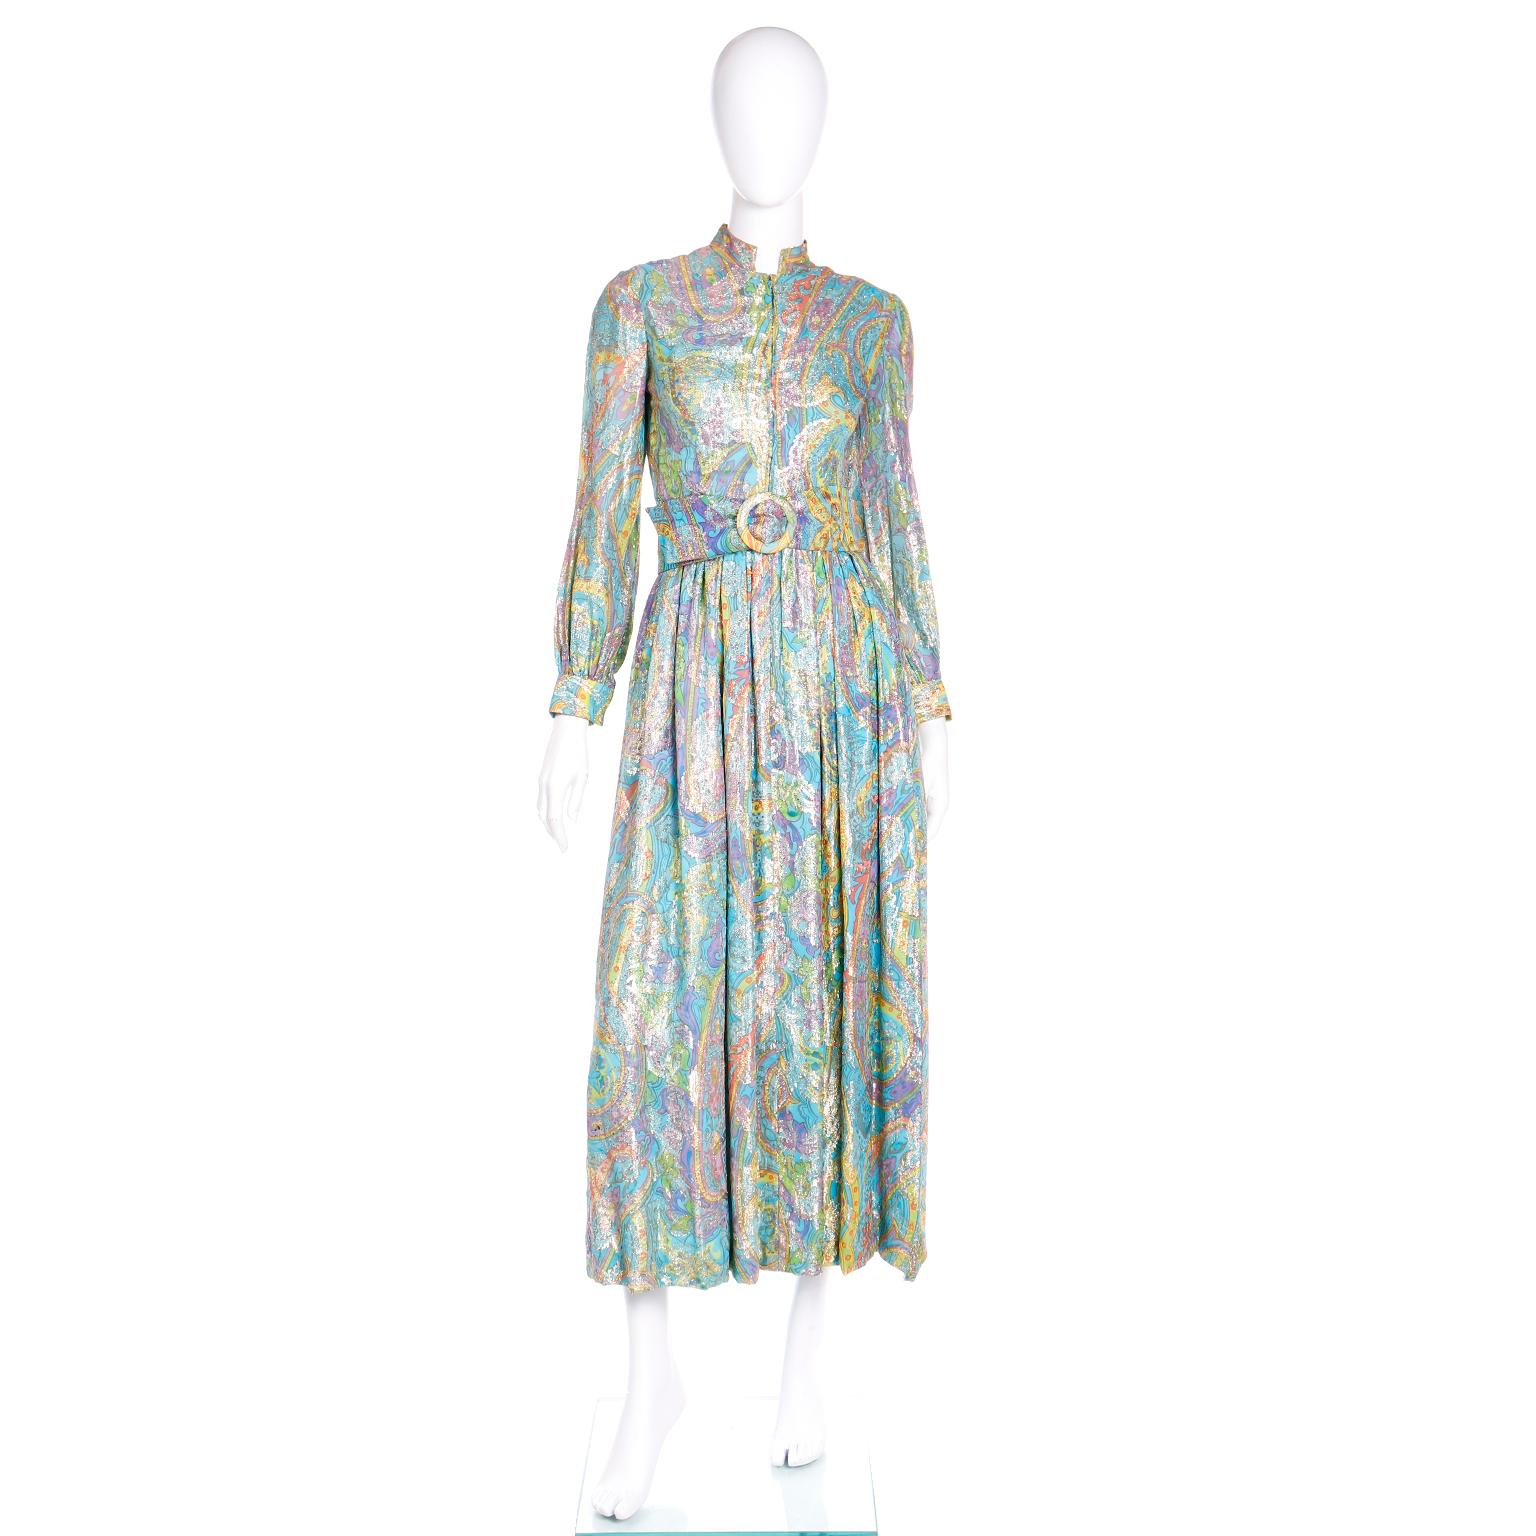 Dieser Spaß Jahrgang Larry Aldrich Maxi-Kleid ist aus den späten 1960er oder frühen 1970er Jahren und es ist in einem wunderschönen Paisley-Druck in den Farben blau, gelb, grün, orange und lila mit Goldmetallic in den Druck gewebt. Wir lieben